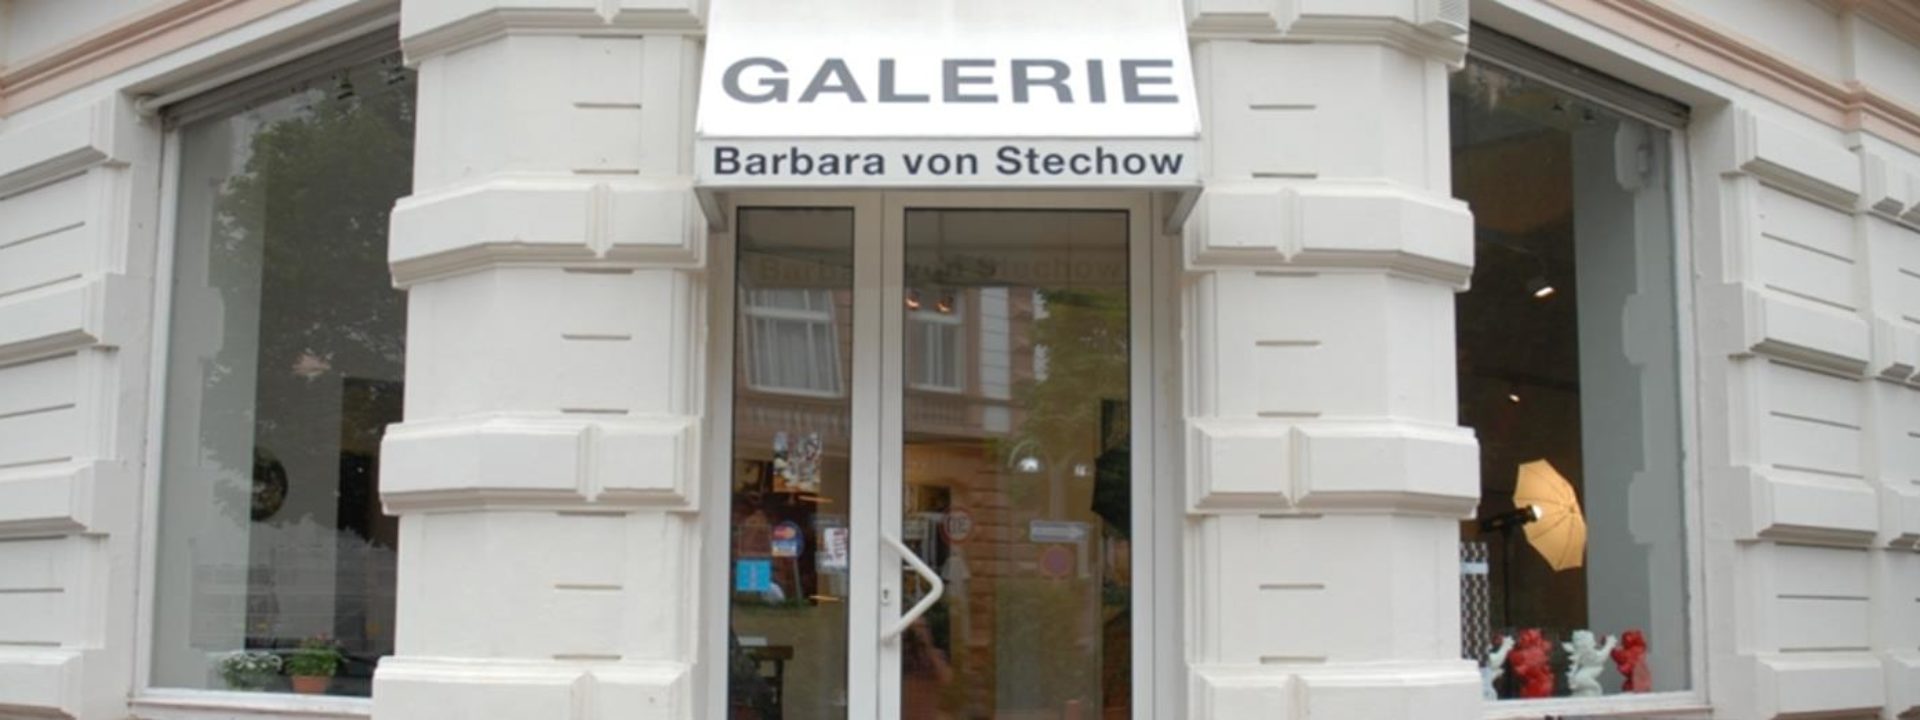 Galerie Barbara von Stechow